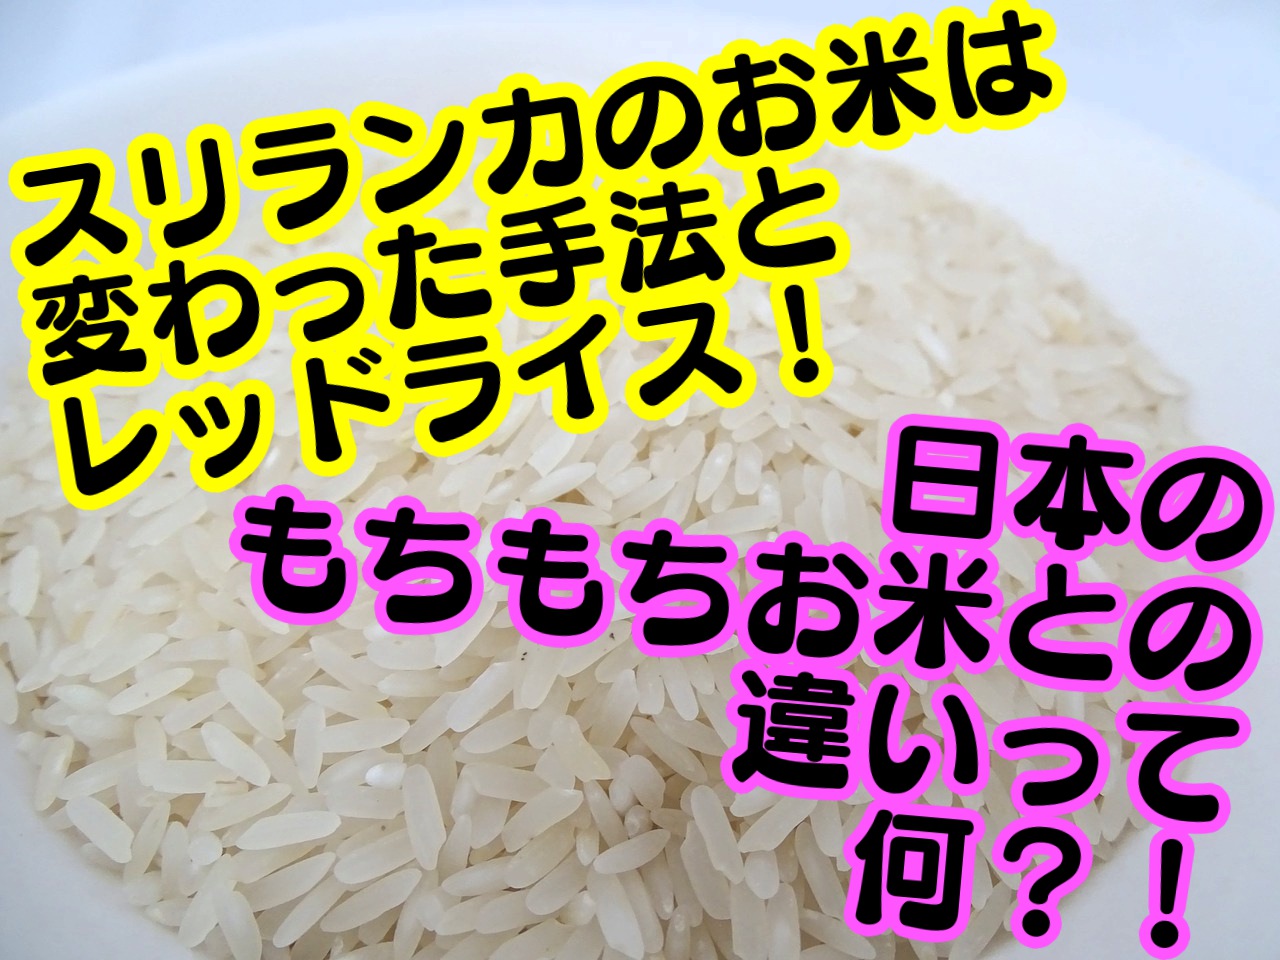 スリランカのお米は日本と違う 種類から精米までをご紹介 海外旅行が好きな夫婦が教えるおすすめ情報